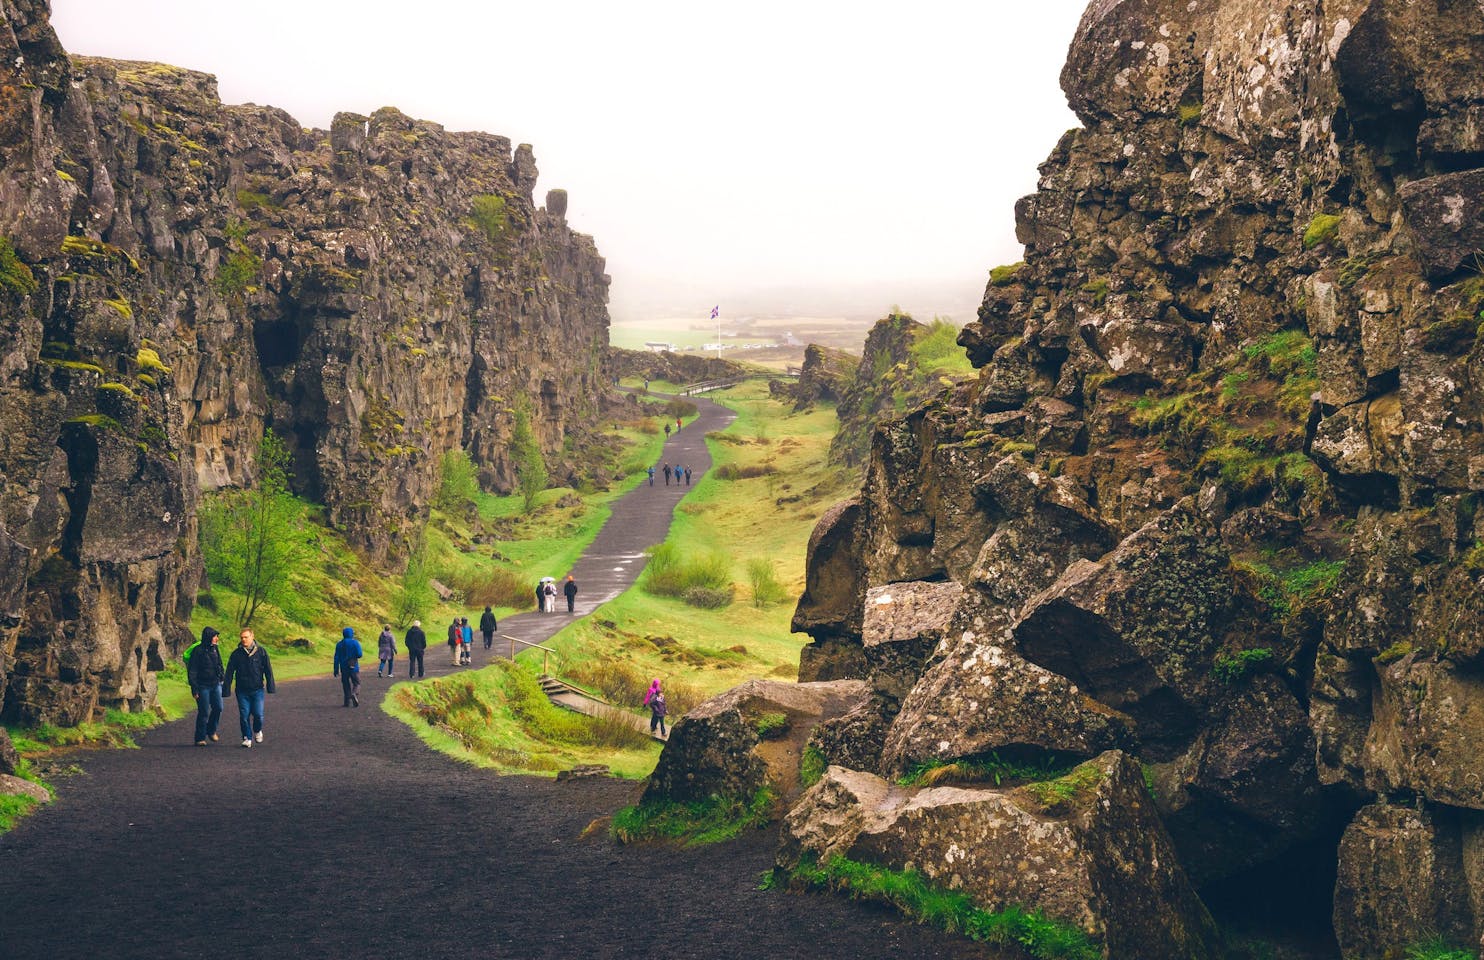 アイスランドの国立公園 観光情報 Guide To Iceland